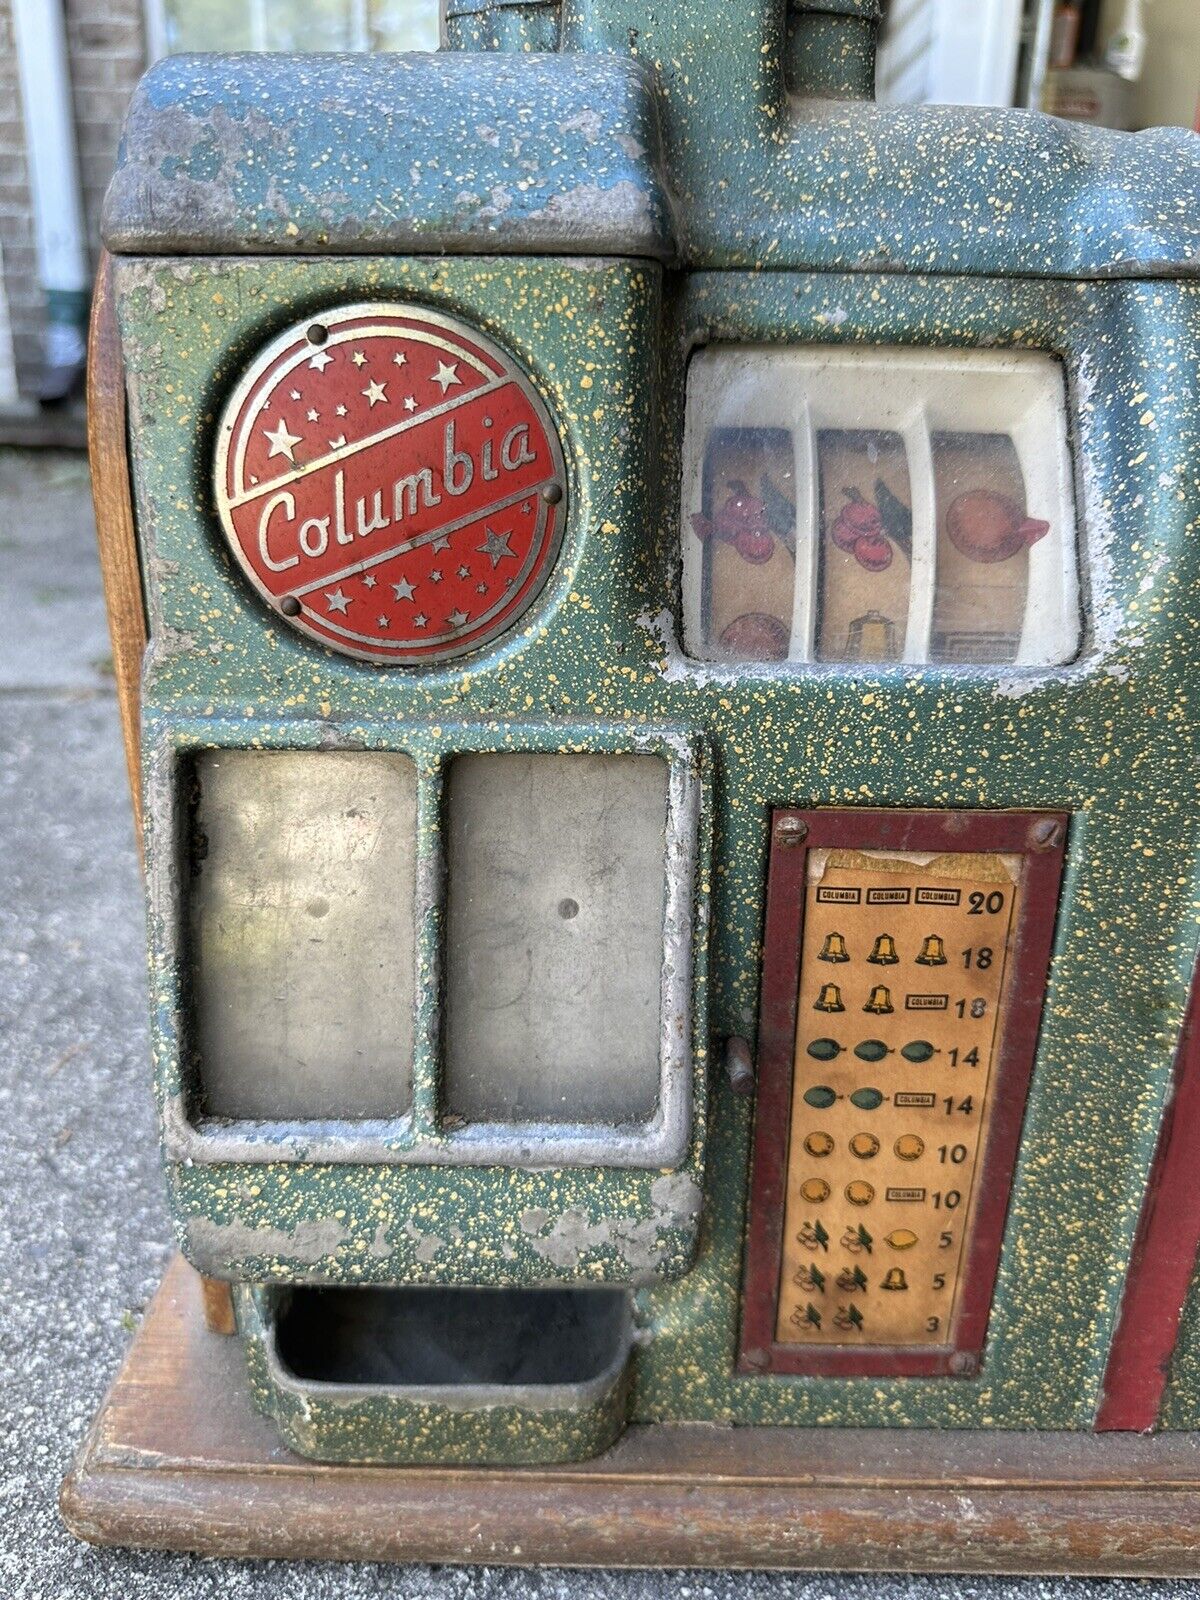 Antique 1930s Columbia 10 Cent (Dime) Slot Machine Countertop 10 cent